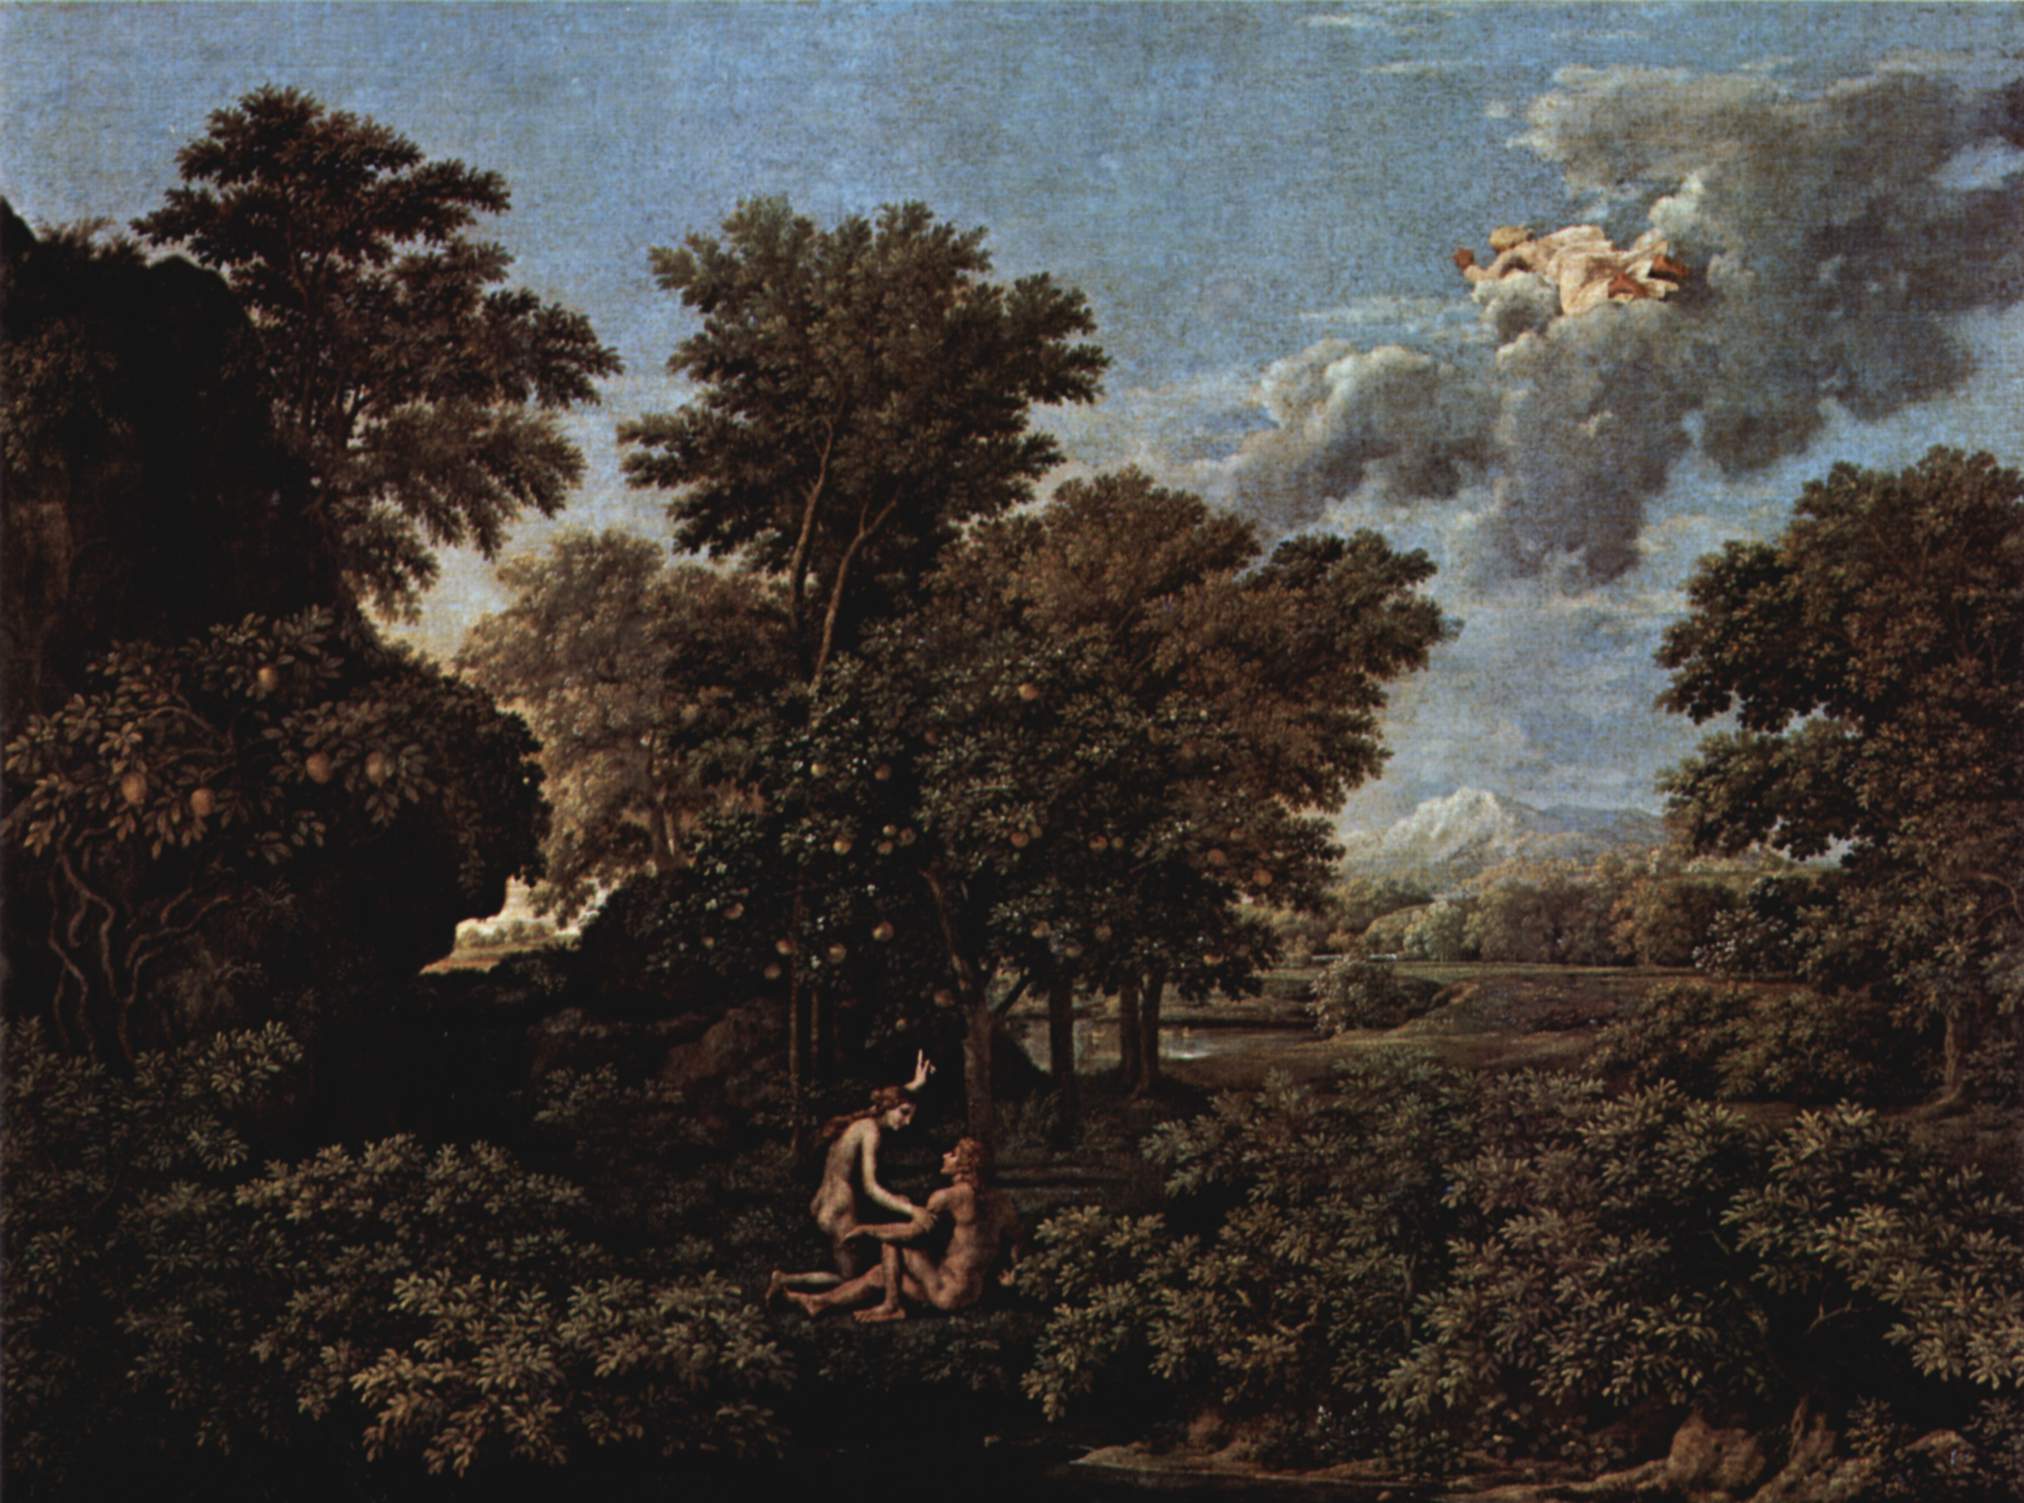 Primăvara (Paradisul pe pământ) by Nicolas Poussin - 1664 - 117 x 160 cm 